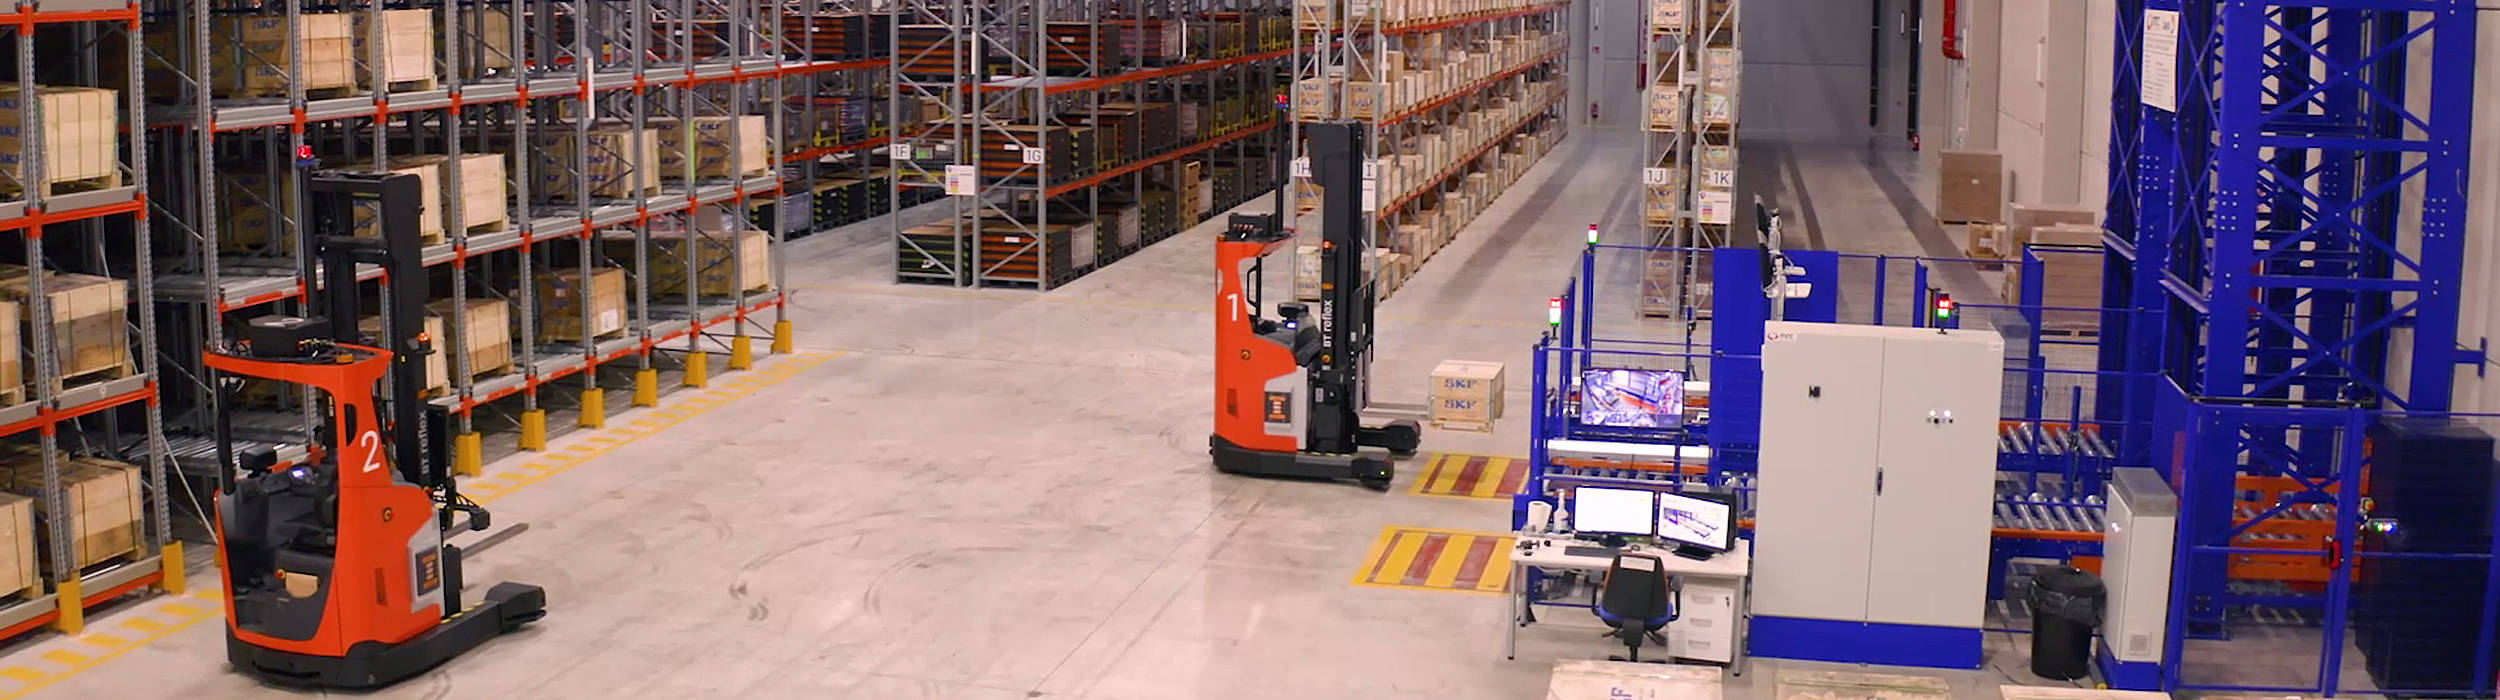 Automatiserede reachtruck, lagertruck hos logistikvirksomhederne Jaylo og SKF